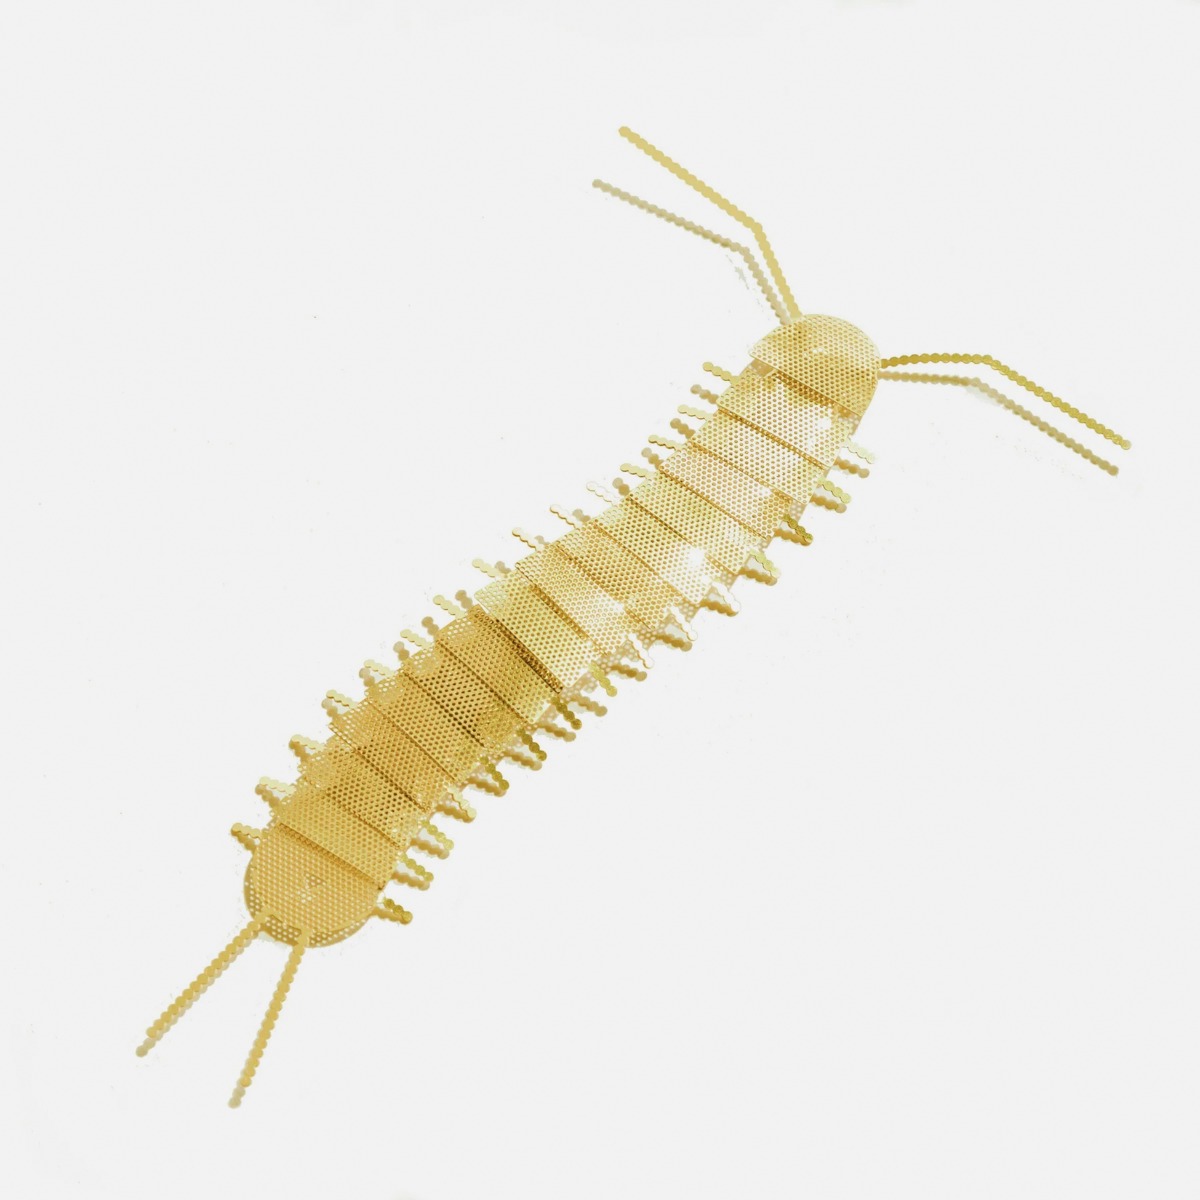 Flatmate Centipede